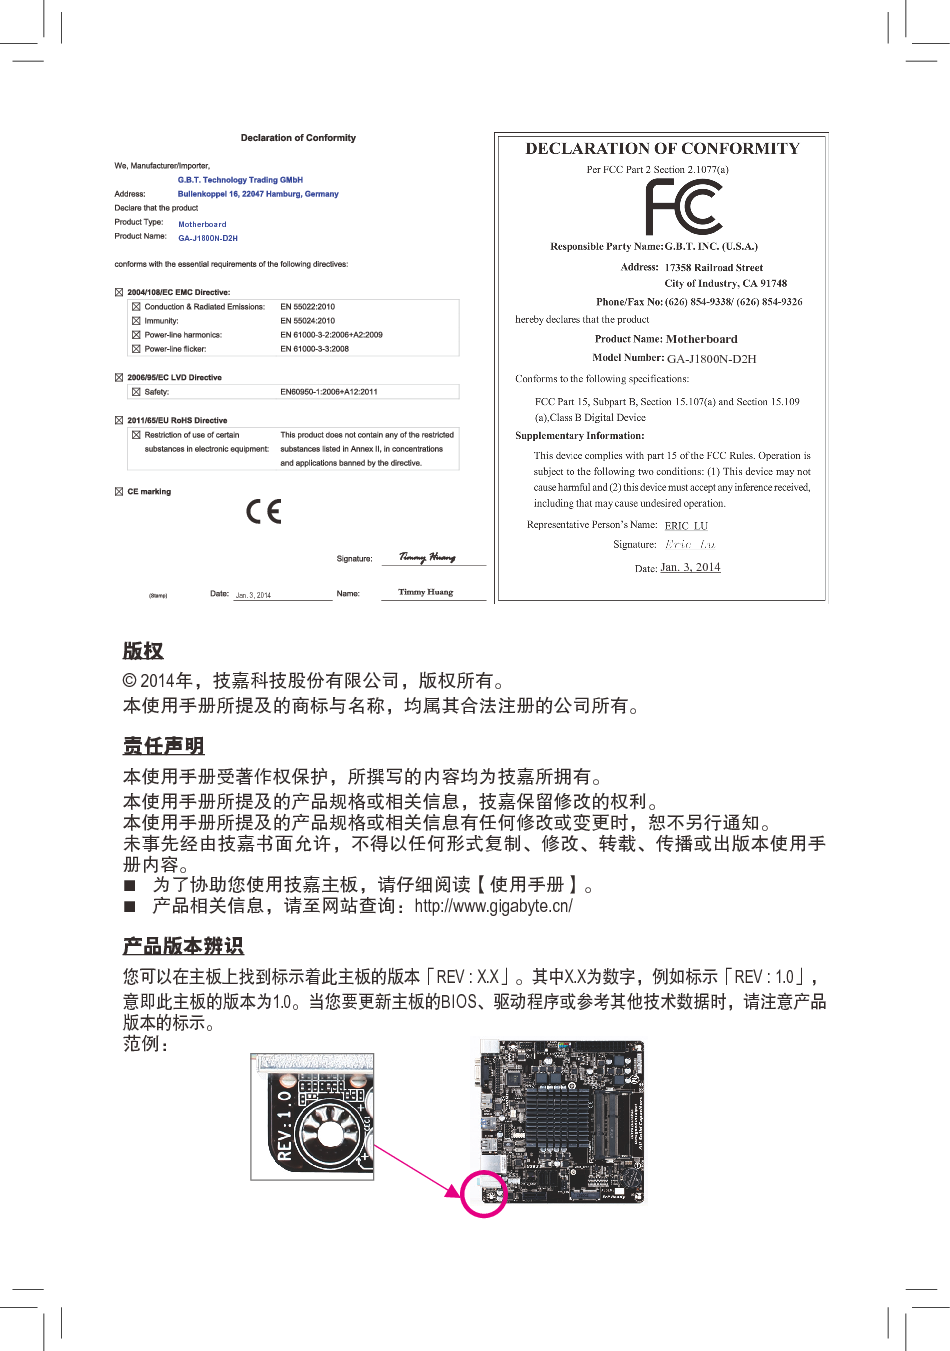 技嘉 Gigabyte GA-J1800N-D2H 使用手册 第1页